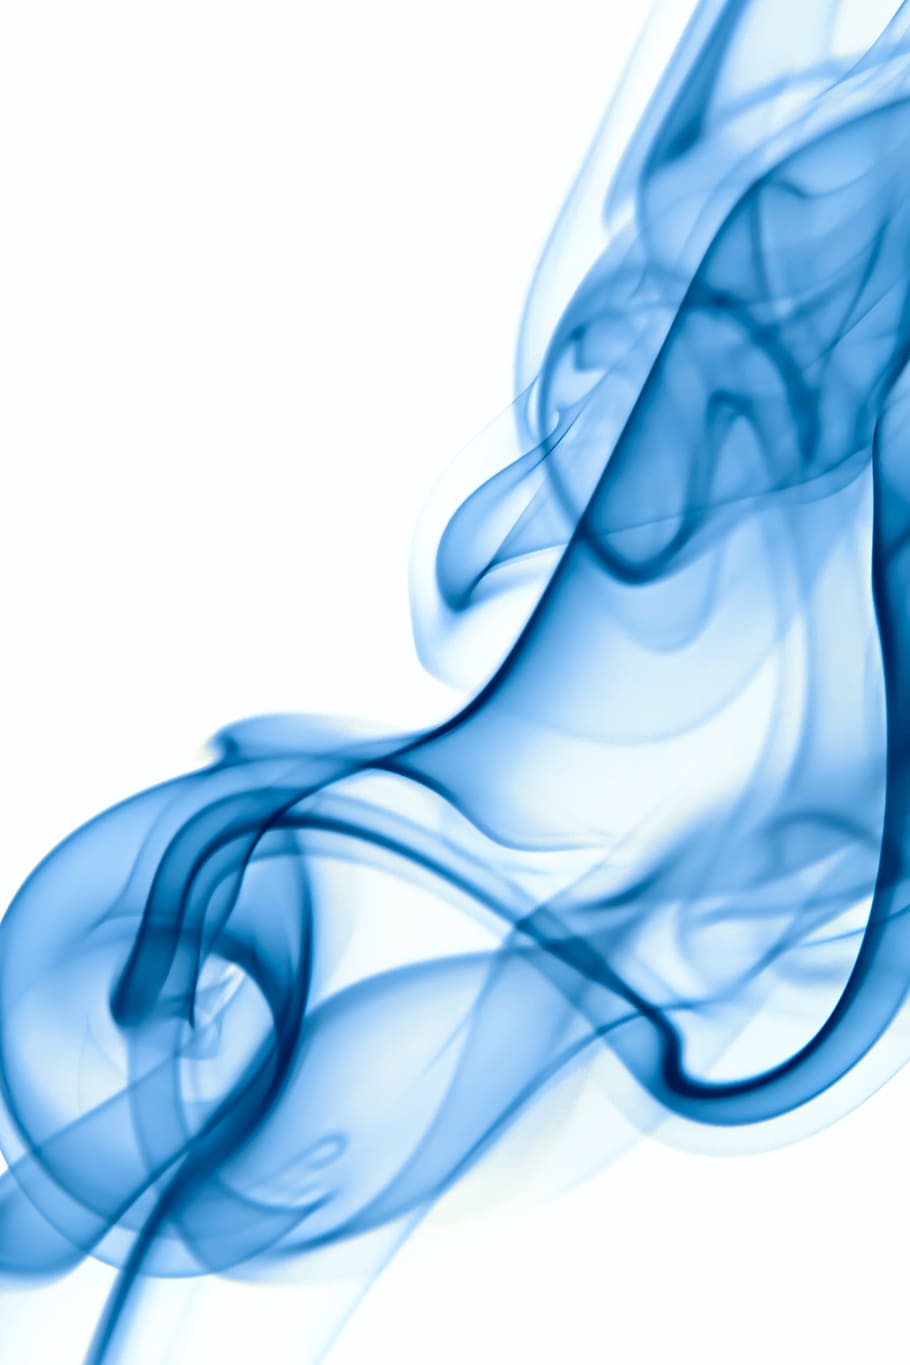 resumen, aroma, aromaterapia, fondo, color, olor, humo, azul, fondo blanco, en el interior - Pxfuel